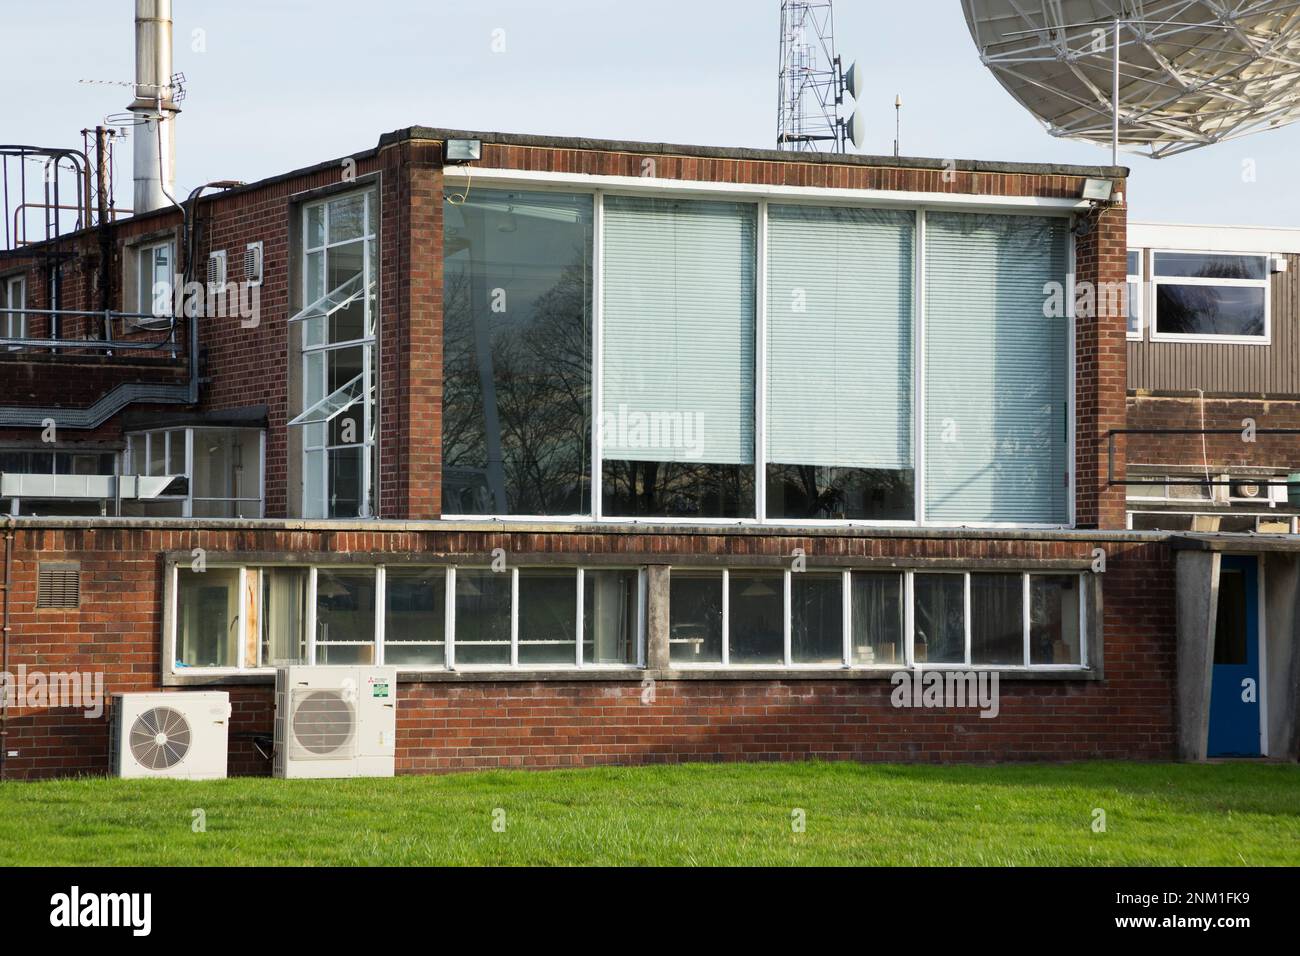 La sala de control (con las grandes ventanas protegidas por persianas) del gigantesco radiotelescopio Lovell – ignorado por el Telescopio de 7M / 7 metros. Sitio de Jodrell Bank, Cheshire, Reino Unido. (133) Foto de stock